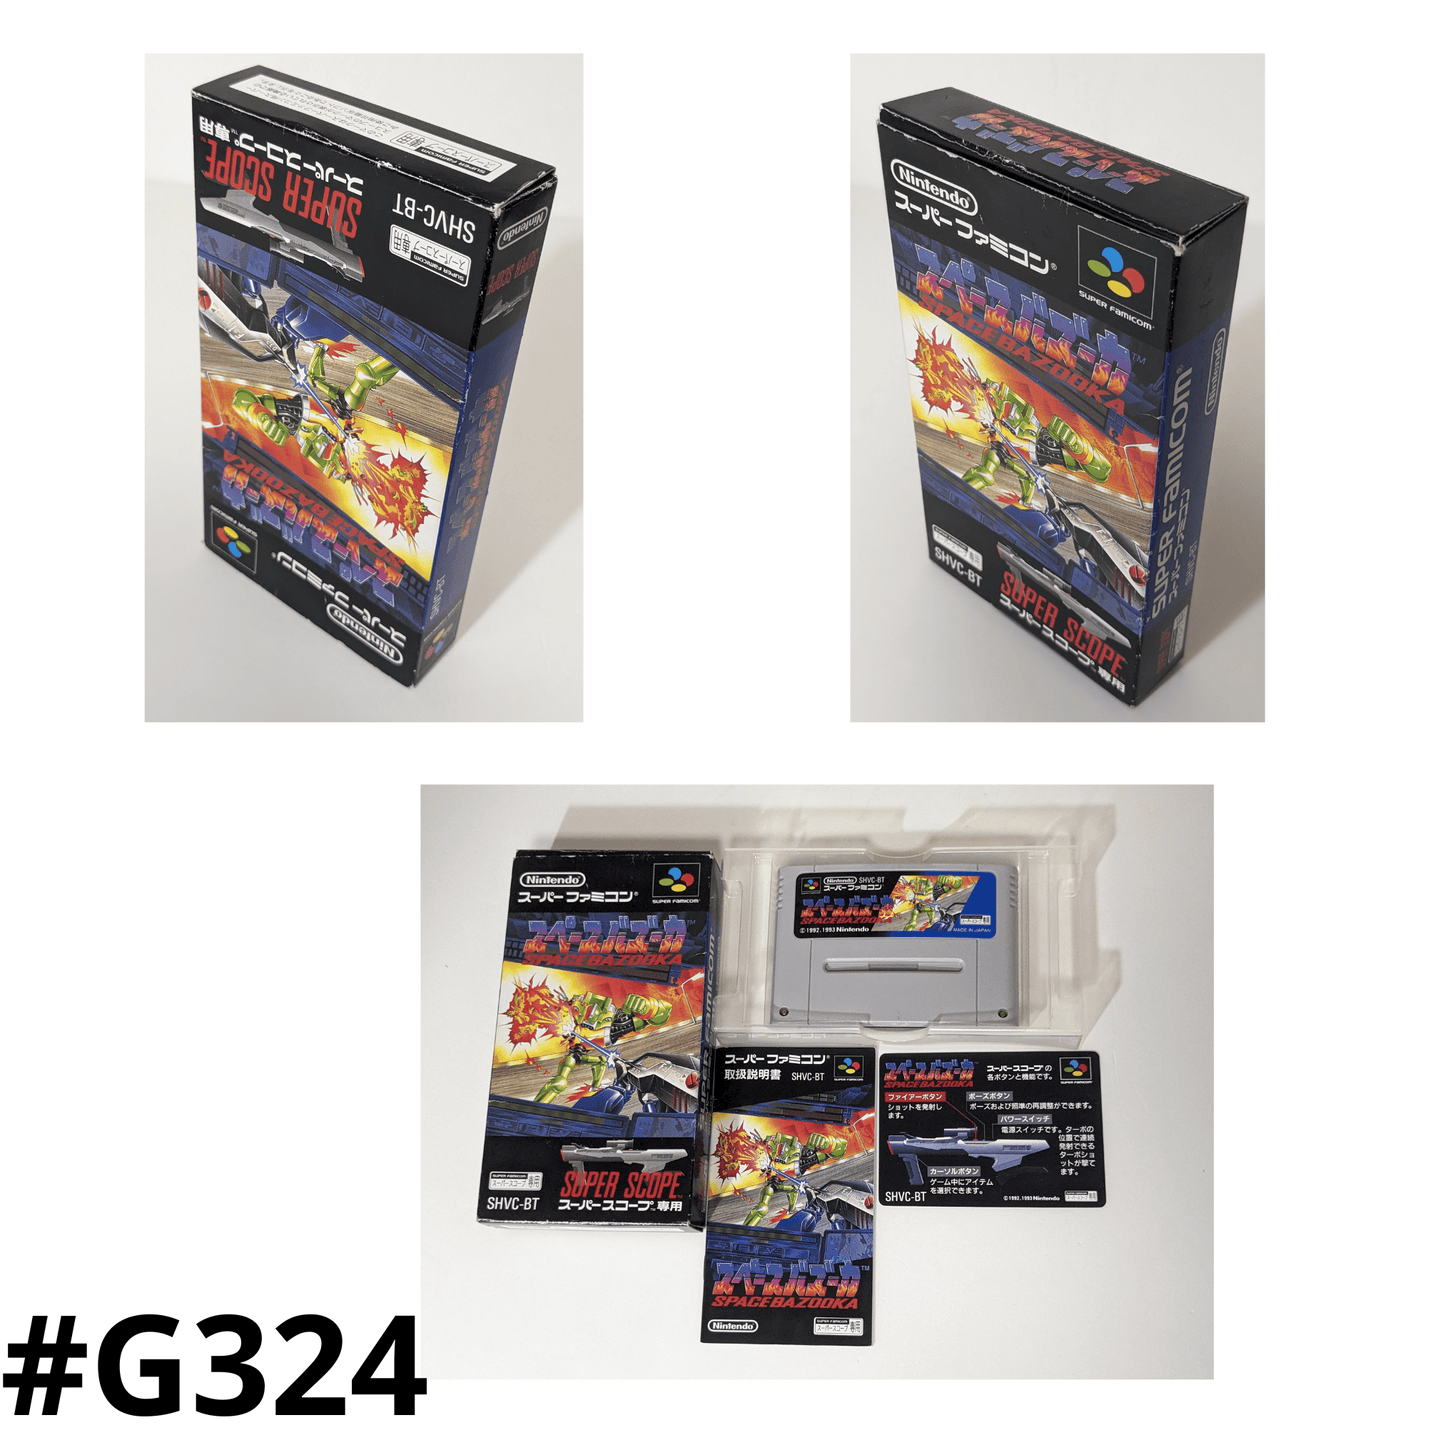 SPACE BAZOOKA | Super Famicom